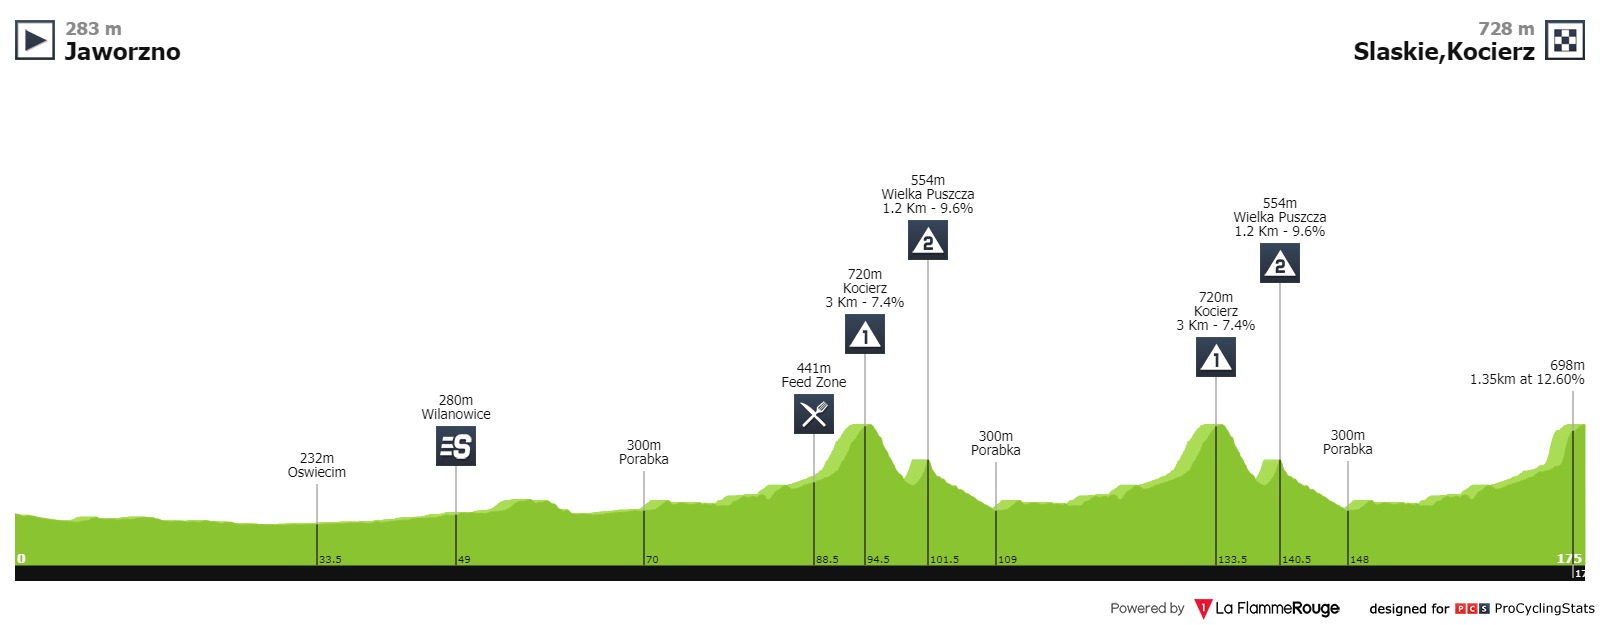 tour-de-pologne-2019-stage-4-profile-2d6b9b9b3a.jpg